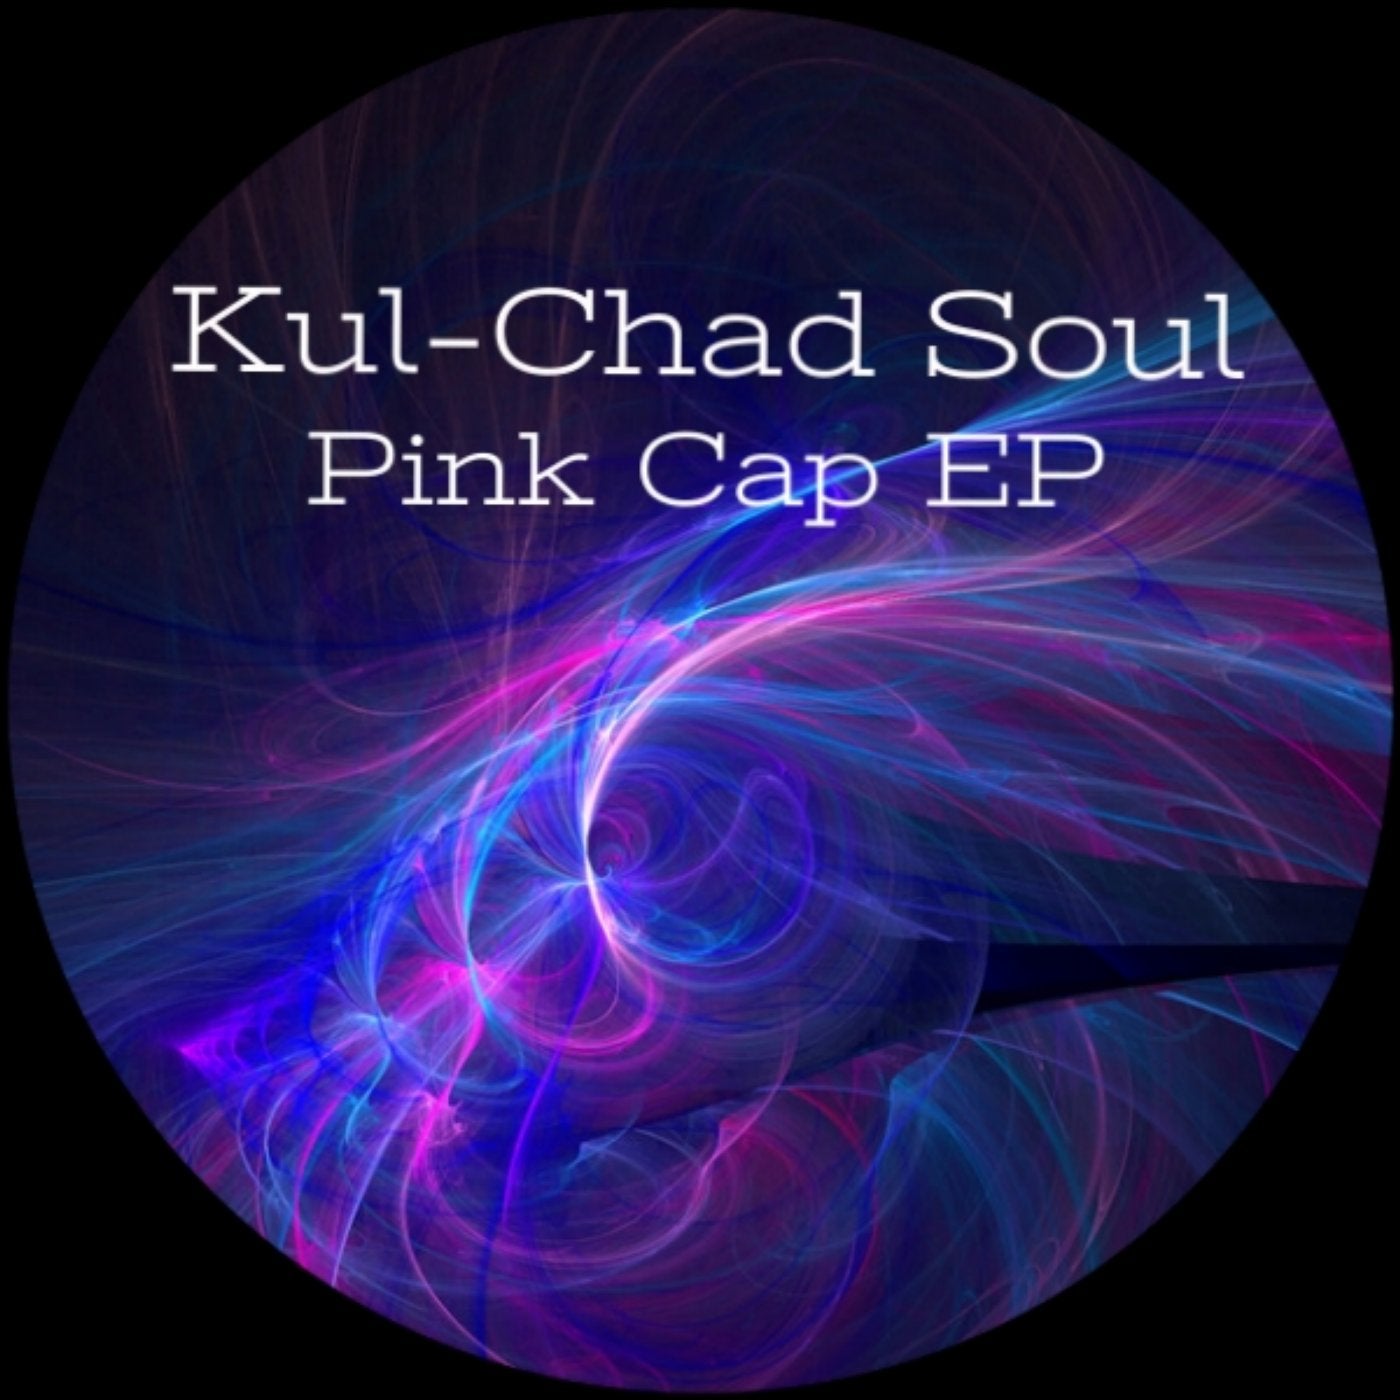 Pink Cap EP